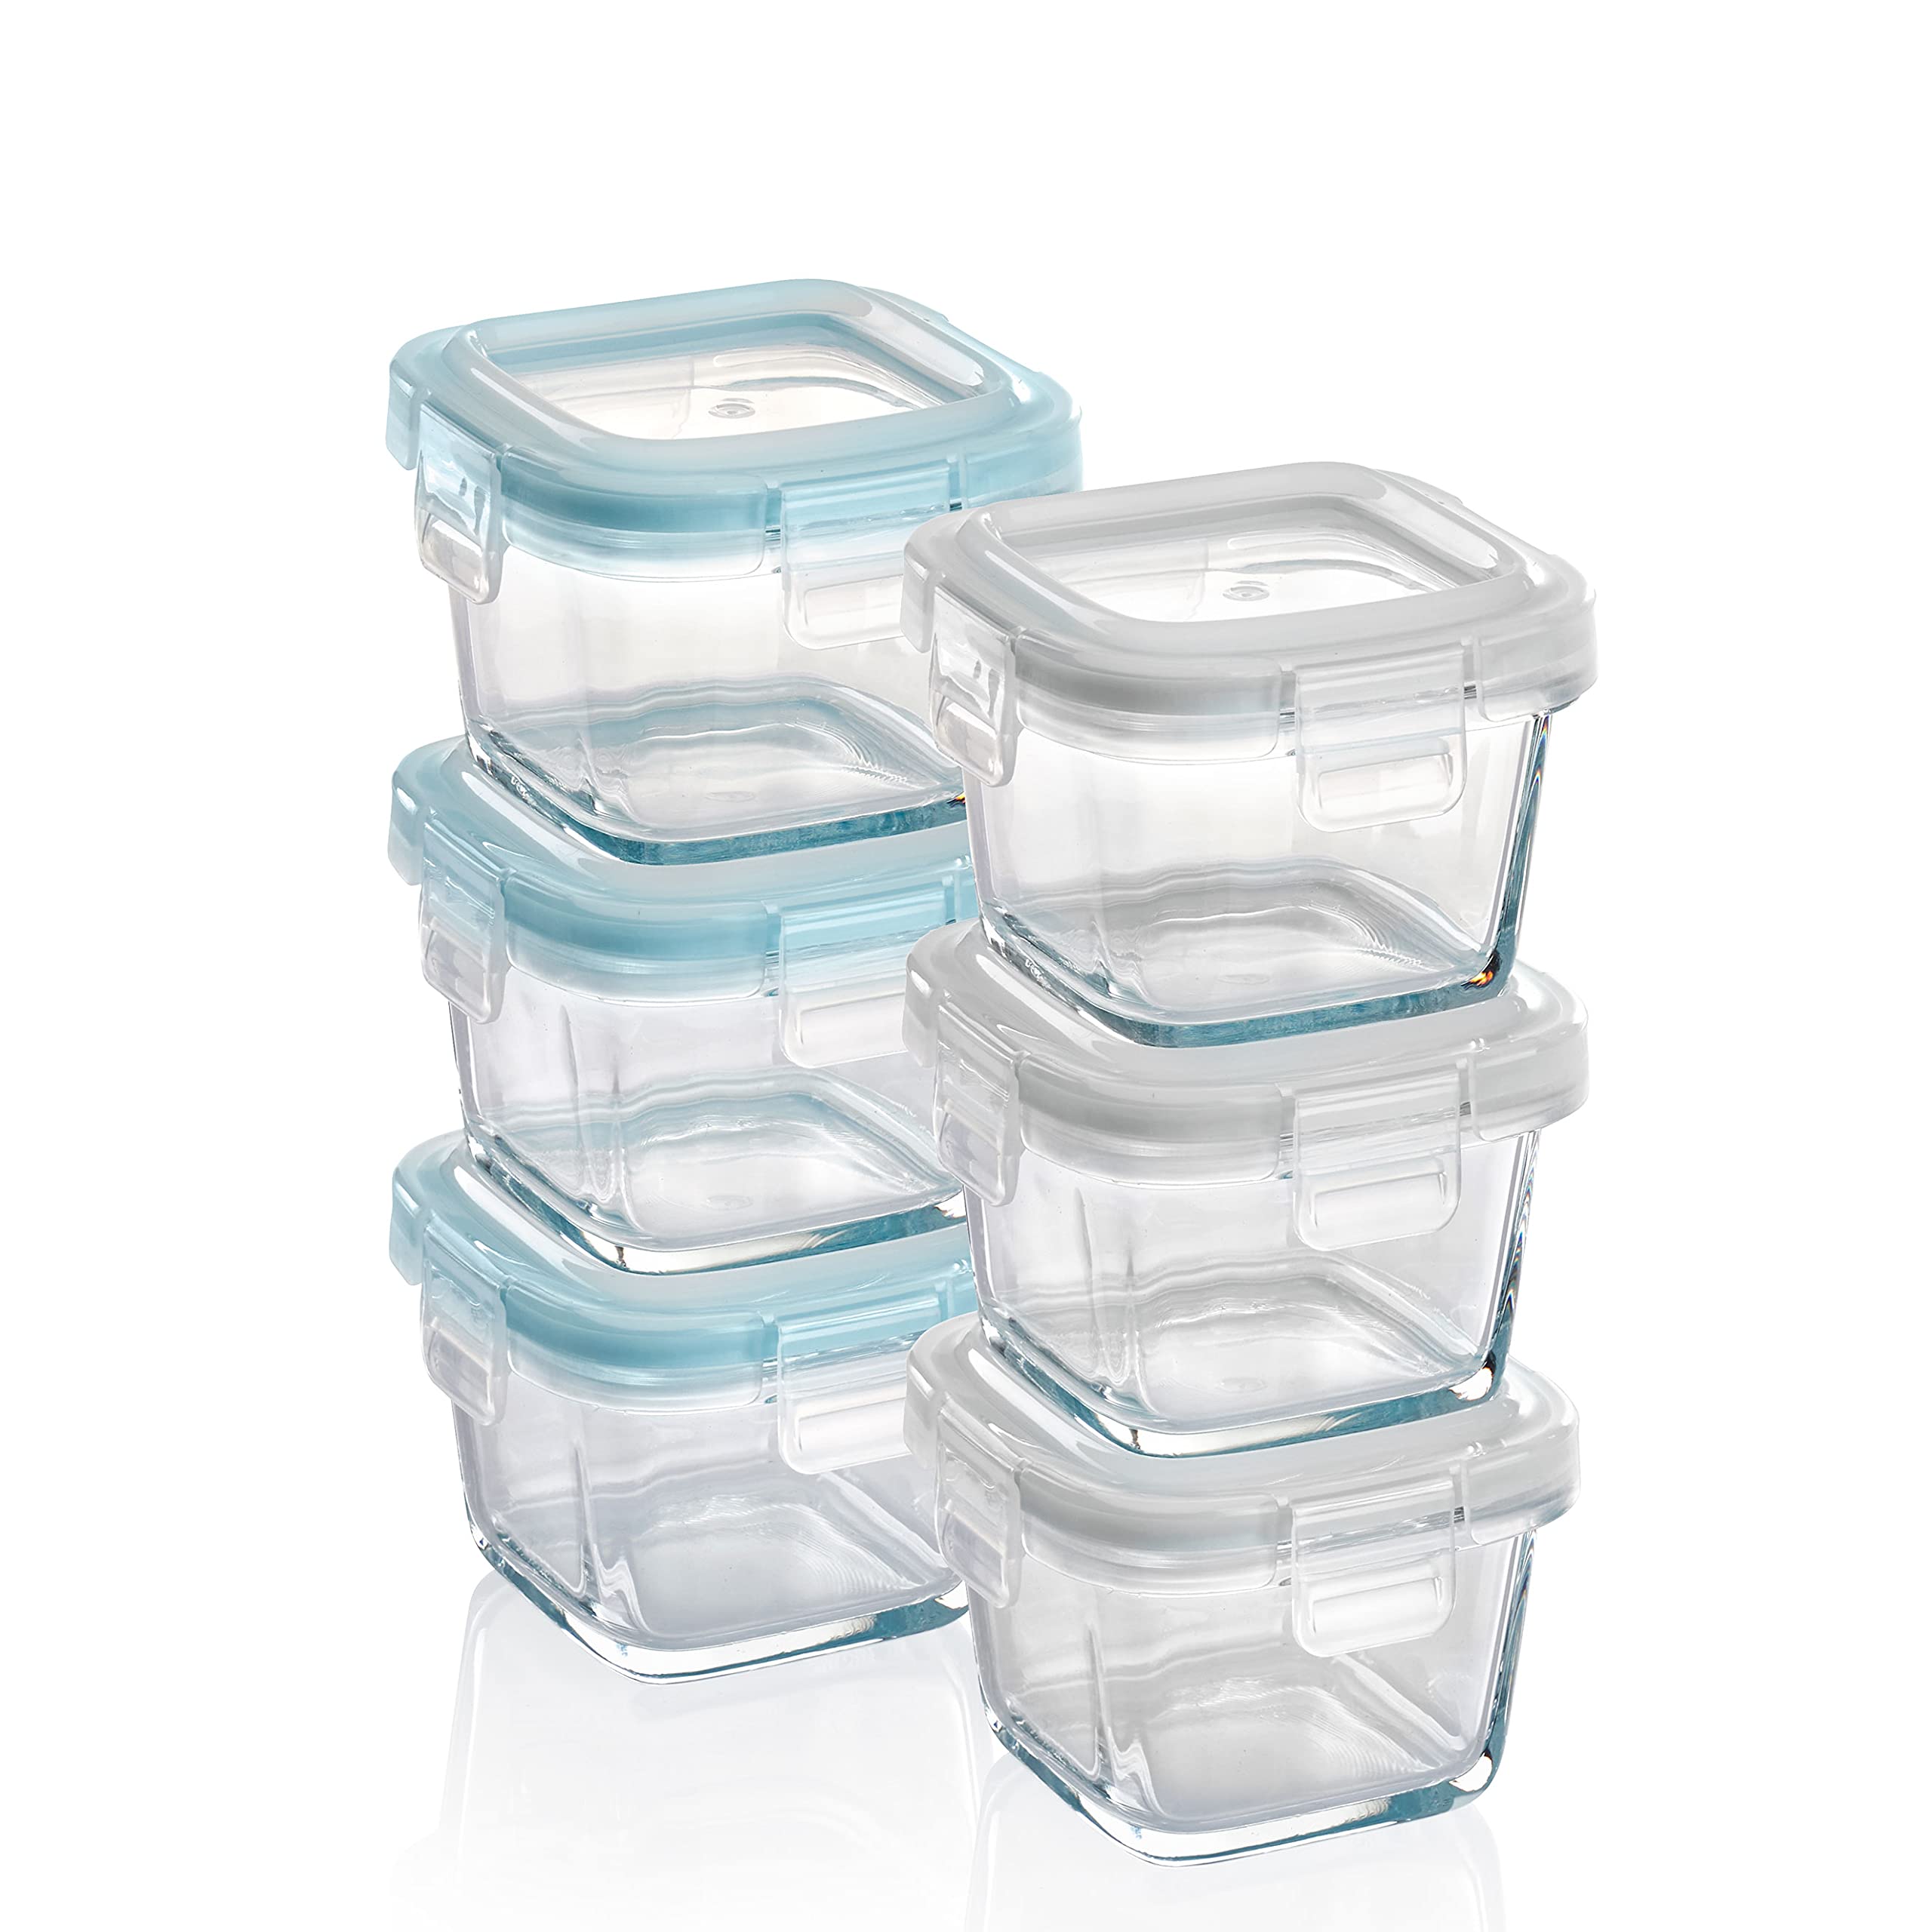 Grizzly Mini Glas Frischhaltedosen, Set 6X 160 ml, luftdicht, quadratisch, Click-Verschluss, Idealer Behälter für Babybrei, Beikost und Dips